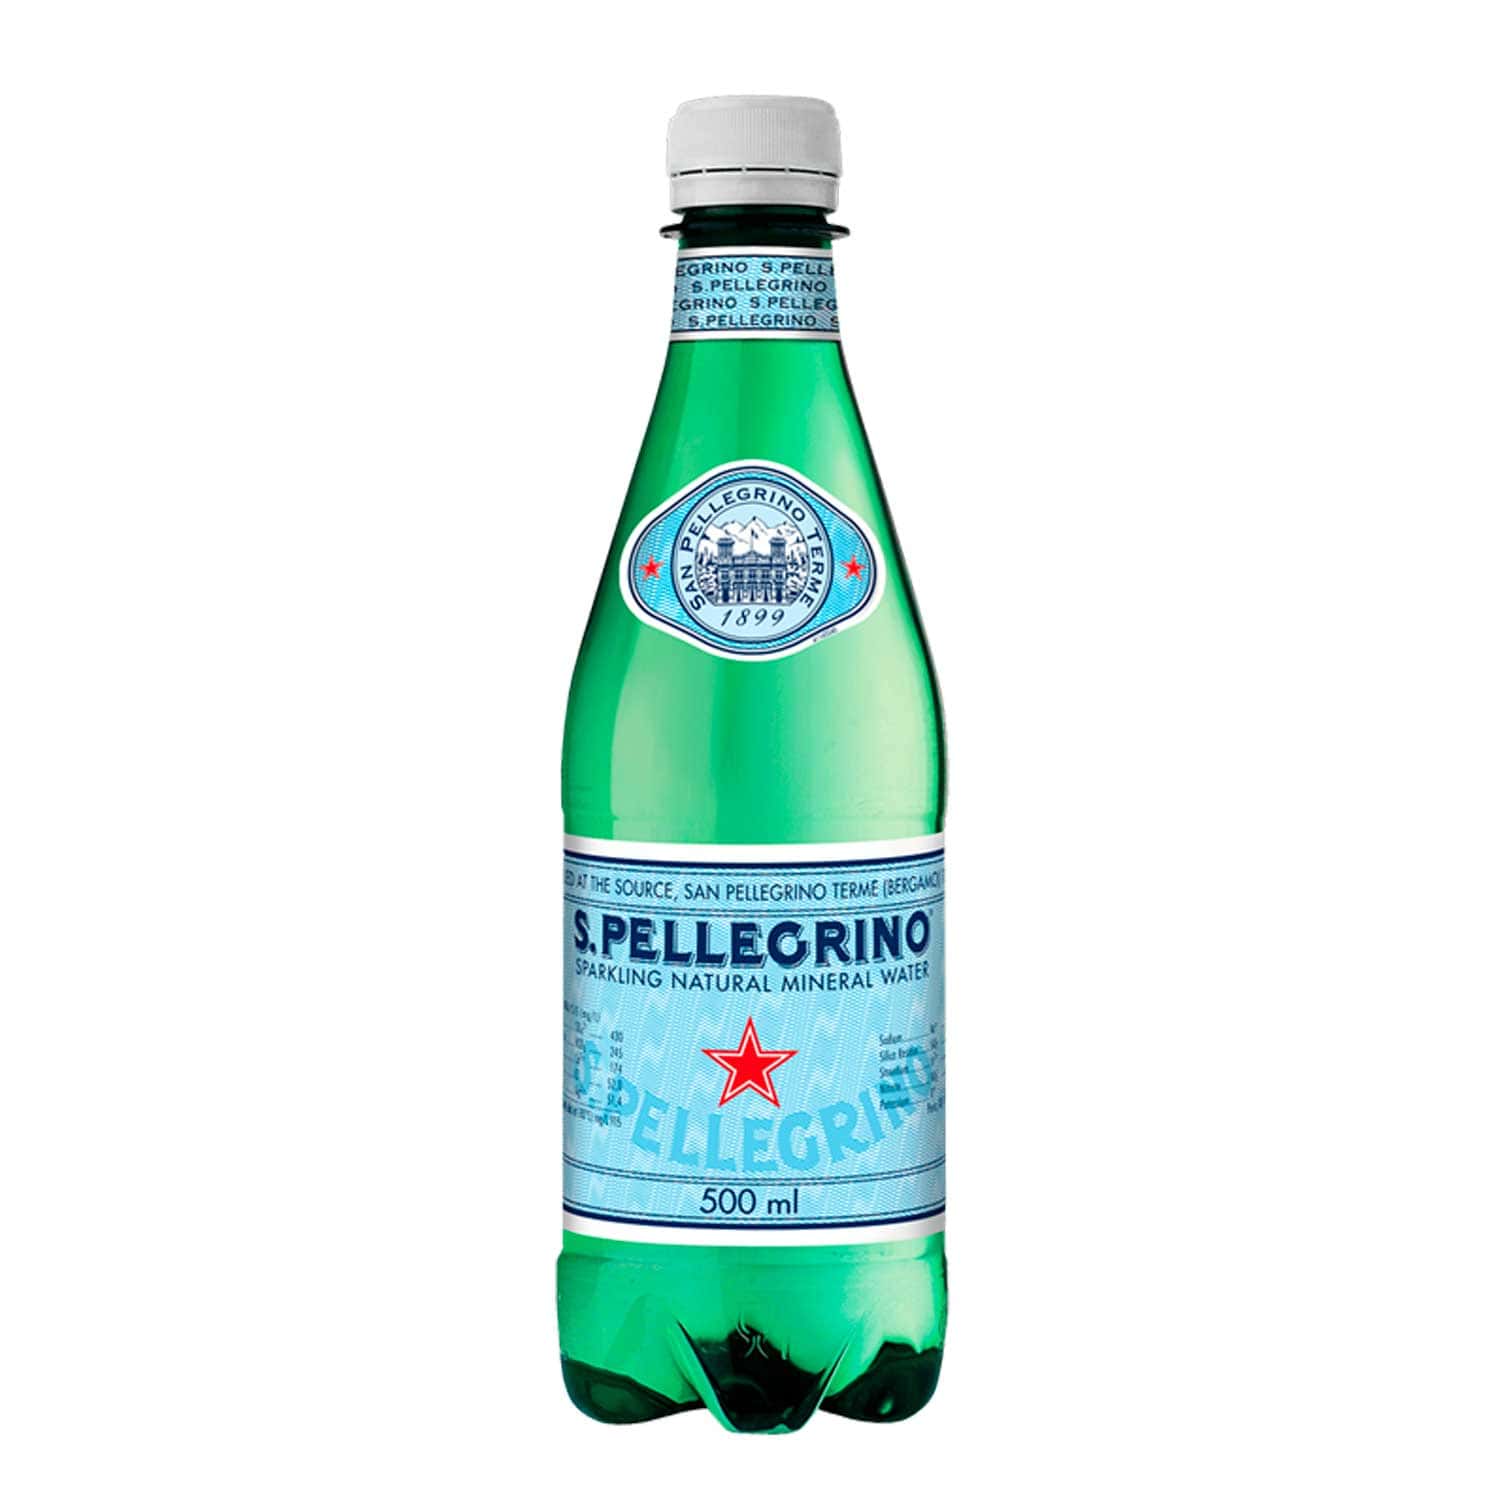 Agua Mineral Gasificada S. Pellegrino. 500 ml